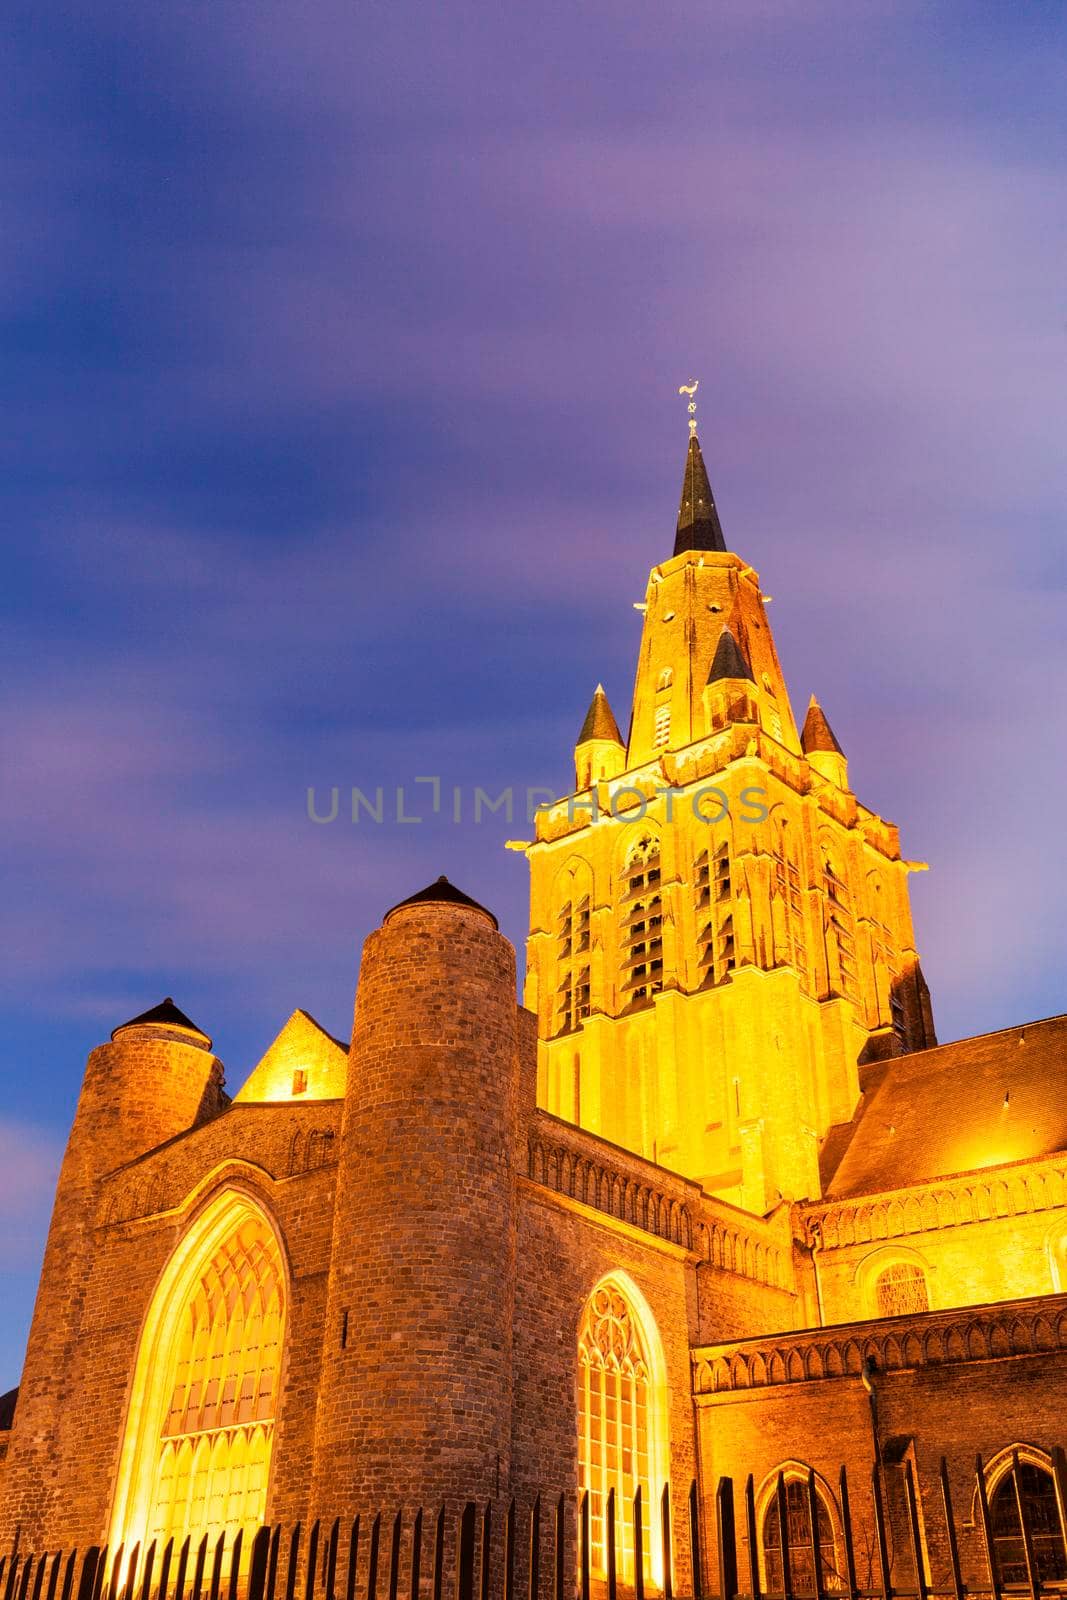 Eglise Notre-Dame Cathedral in Calais. Calais, Nord-Pas-de-Calais-Picardy, France.